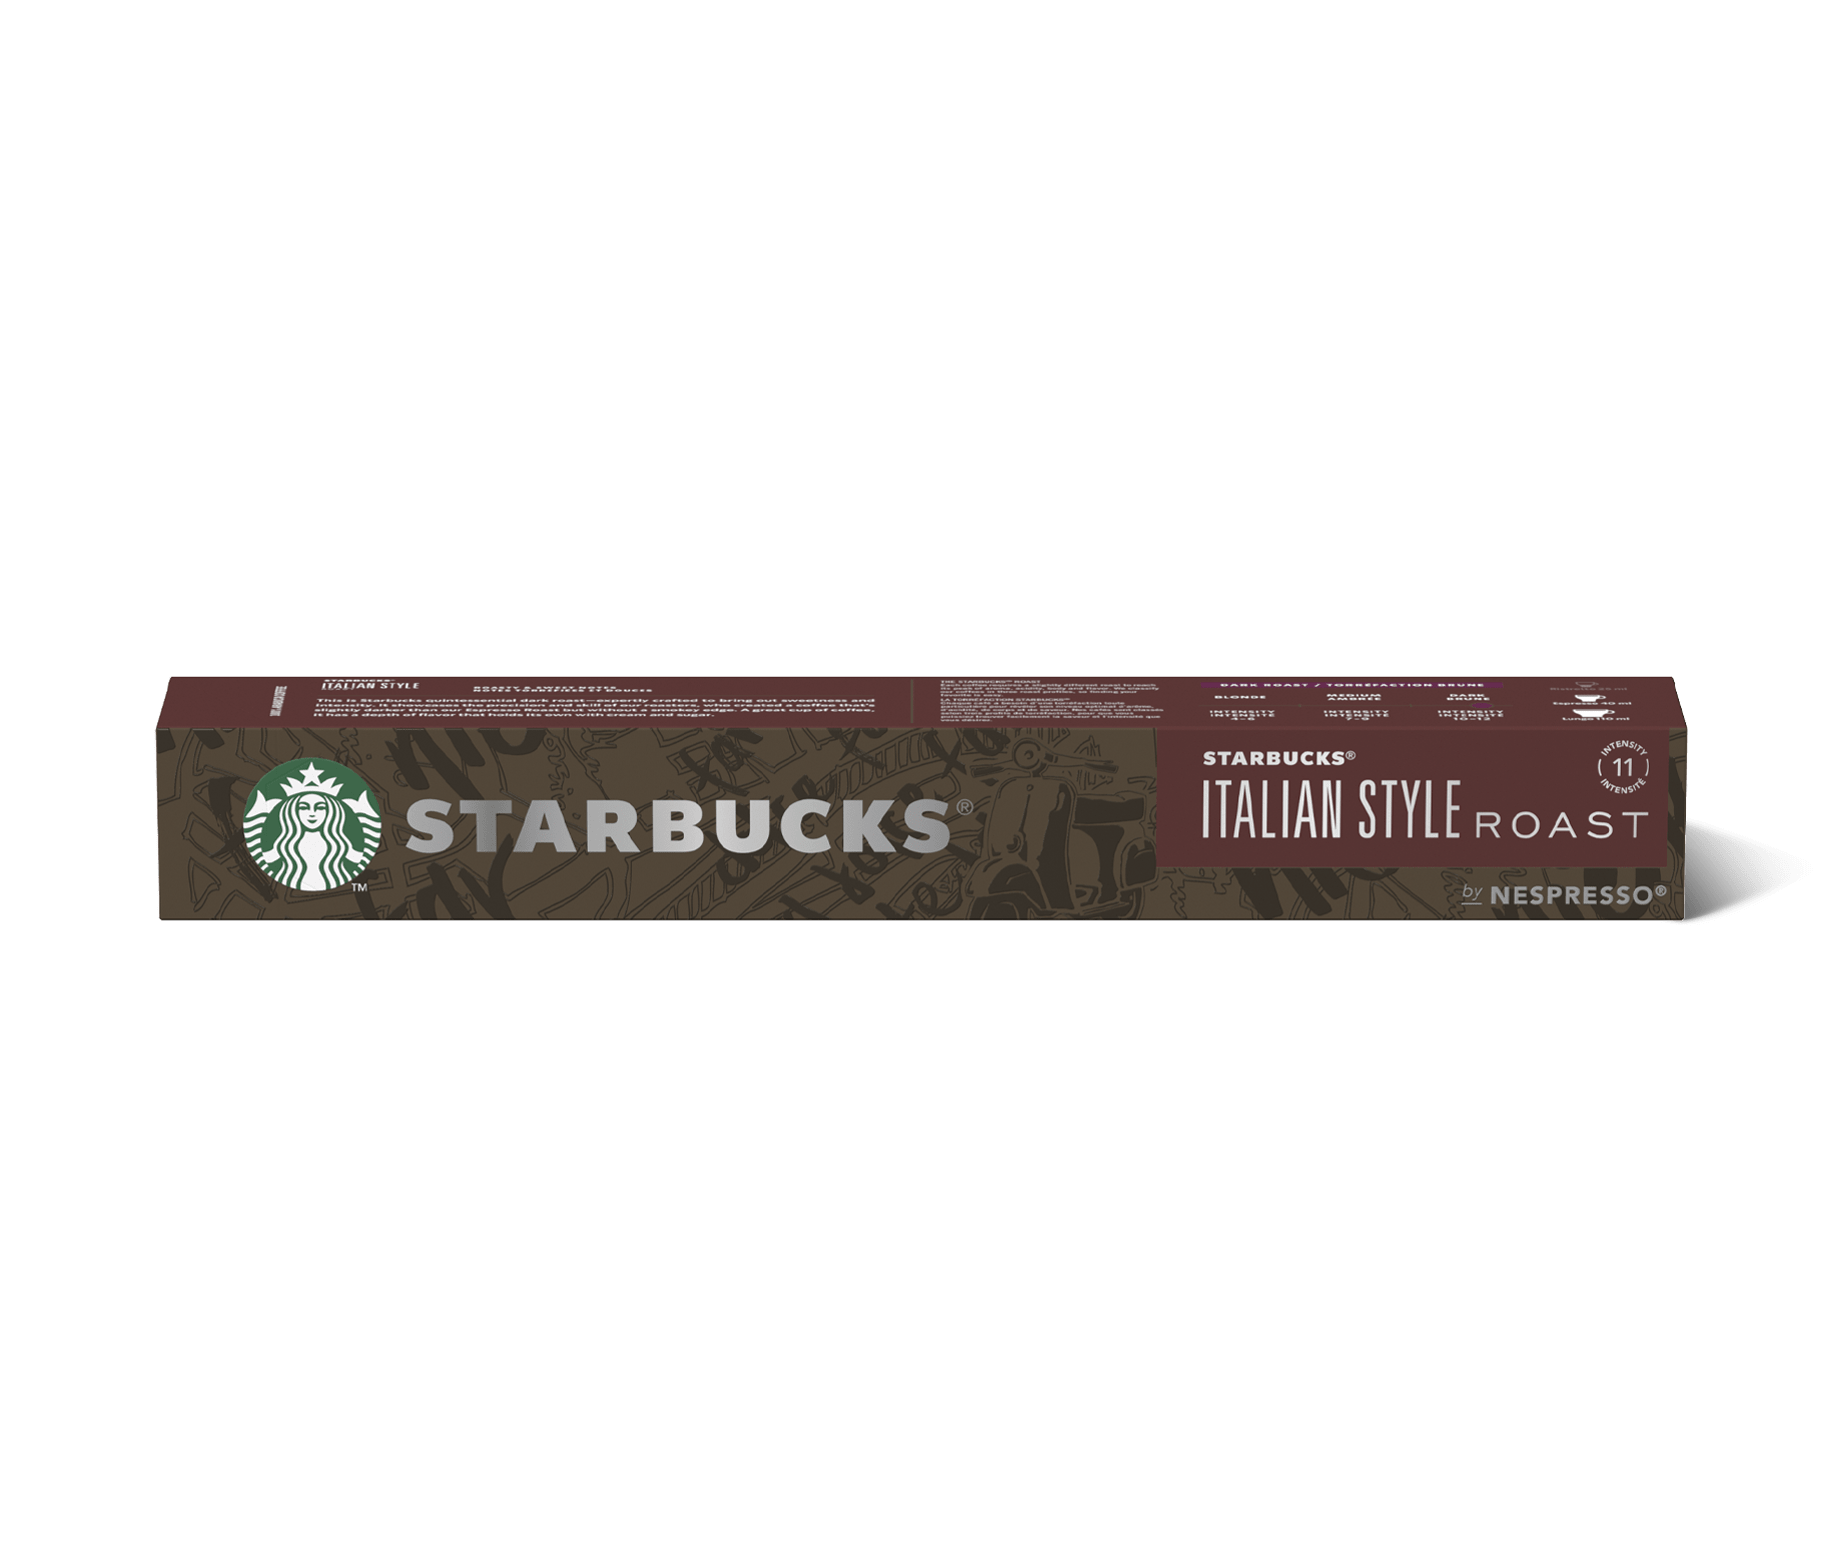 Set de 10 cápsulas café Nespresso Starbucks